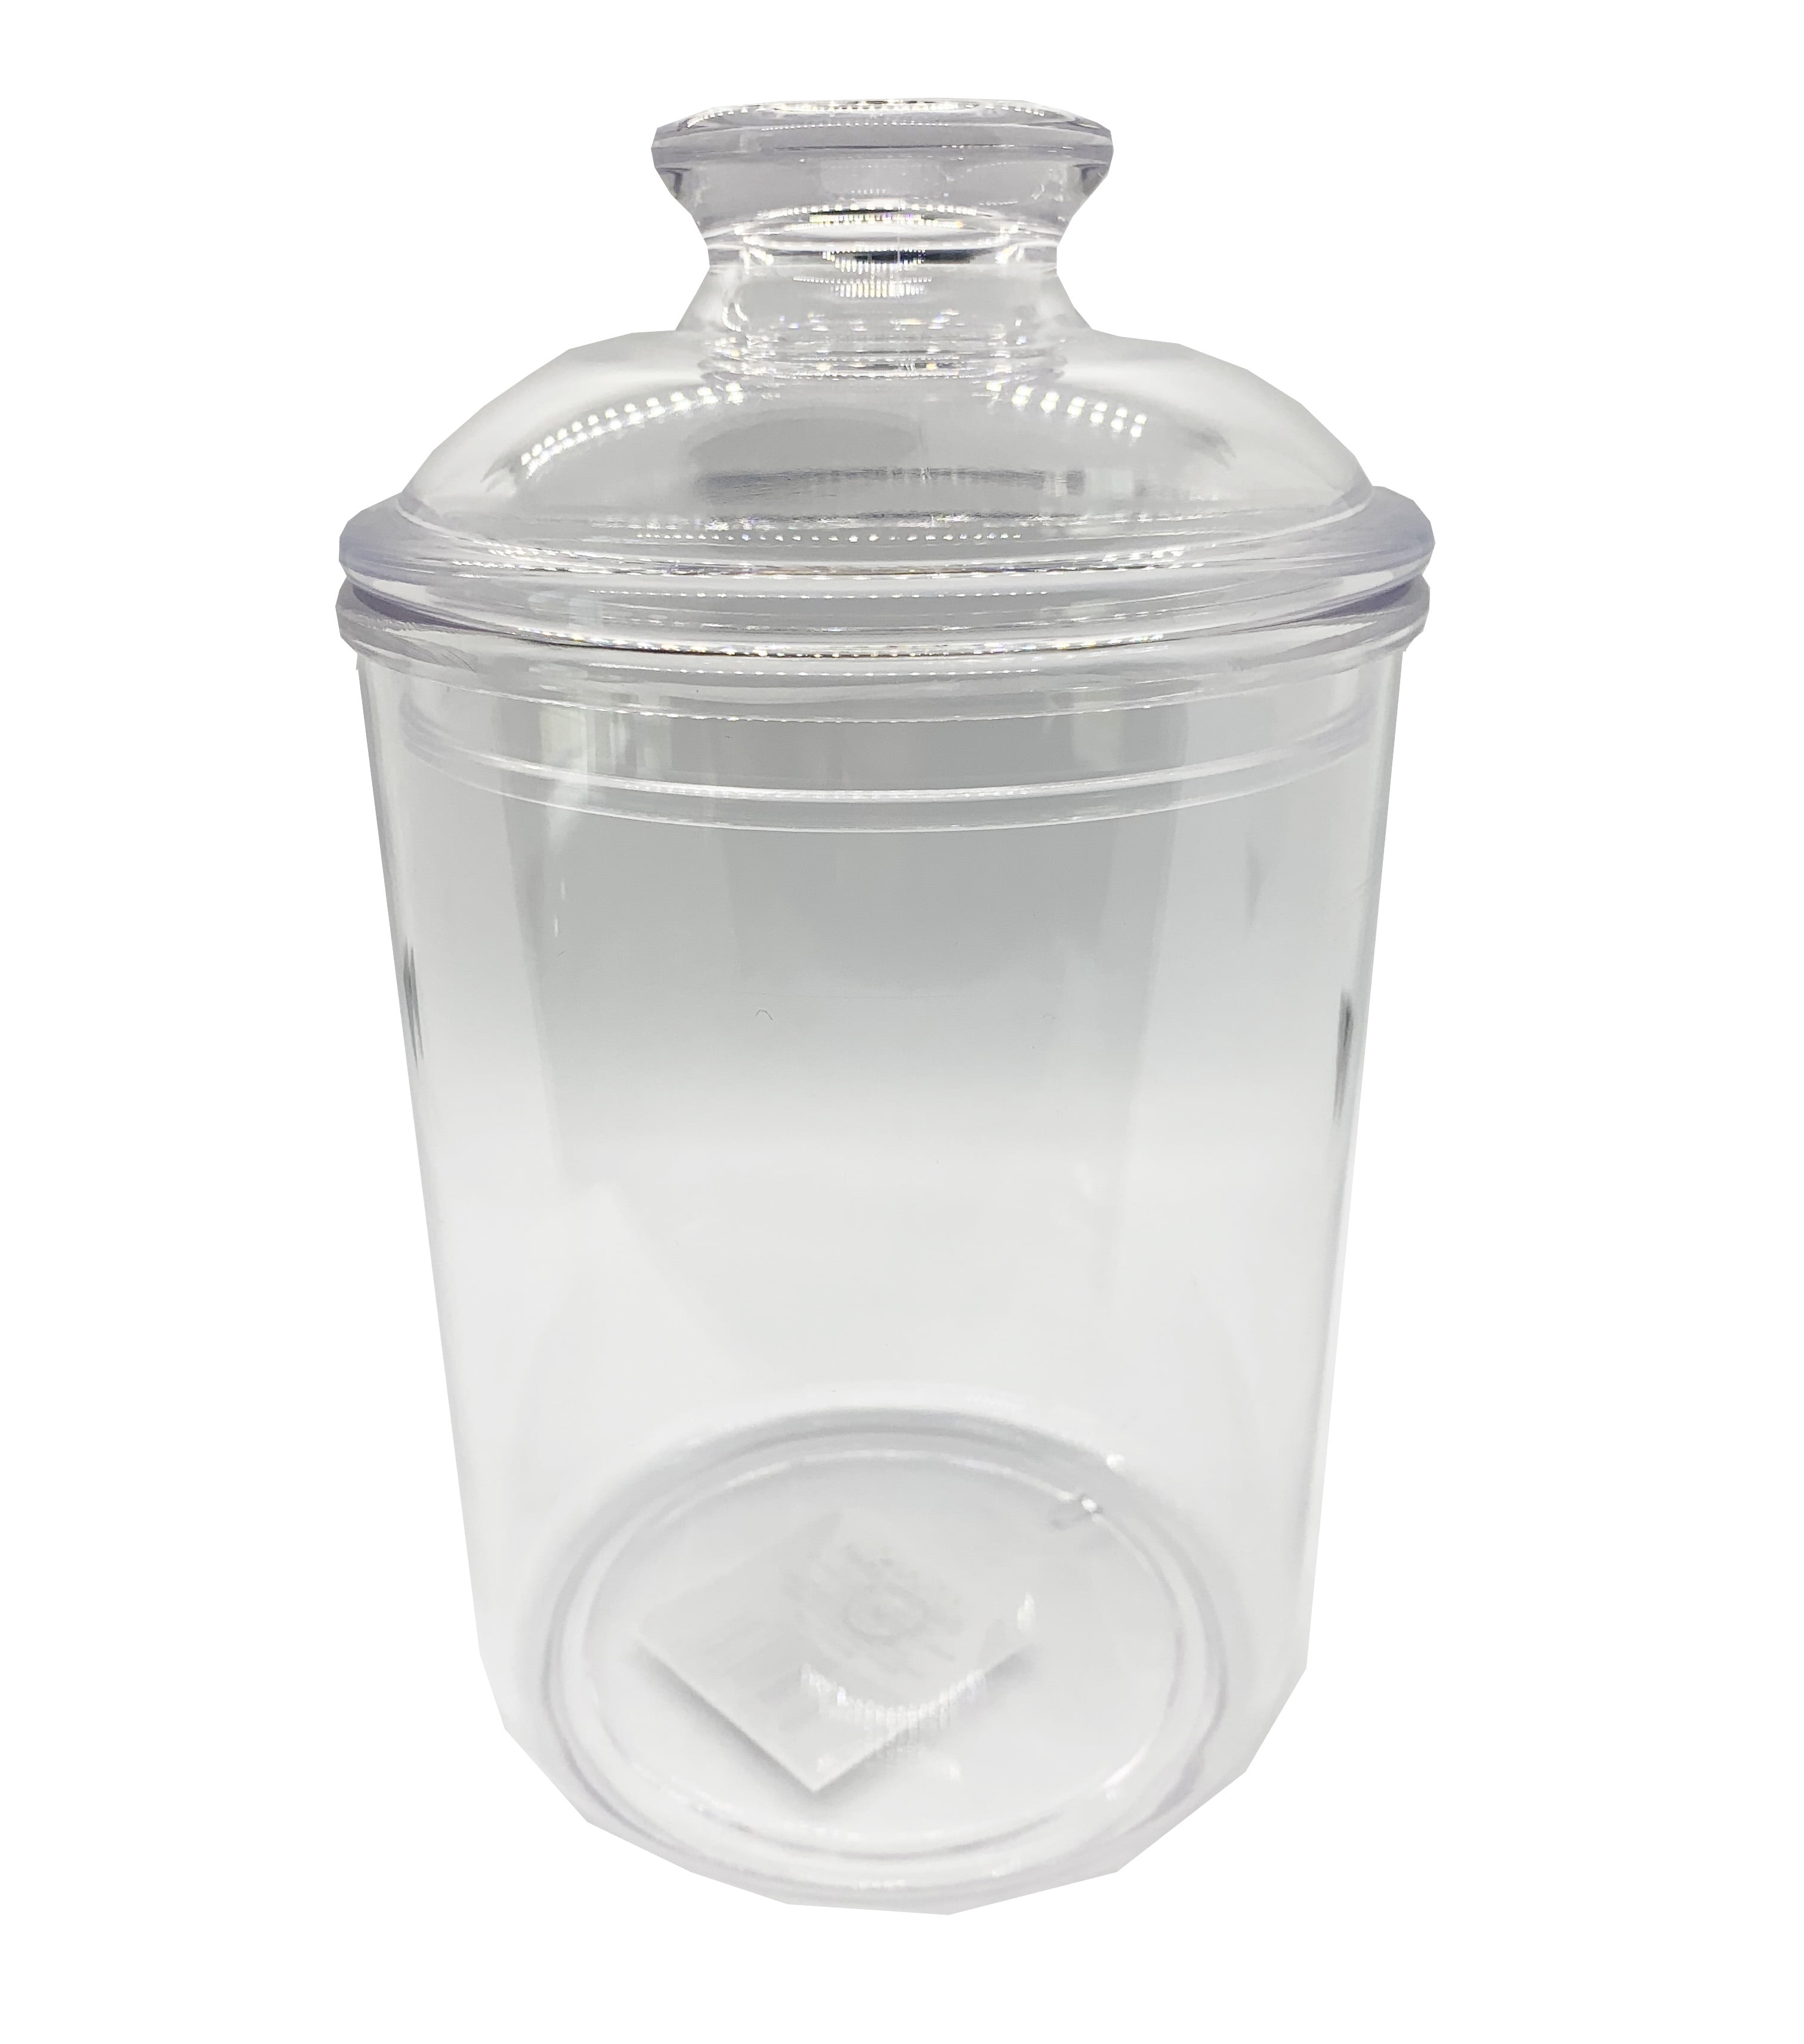 BULK LOT Smalll Glass Jars With Airtight Lids 70ml Mini Glass